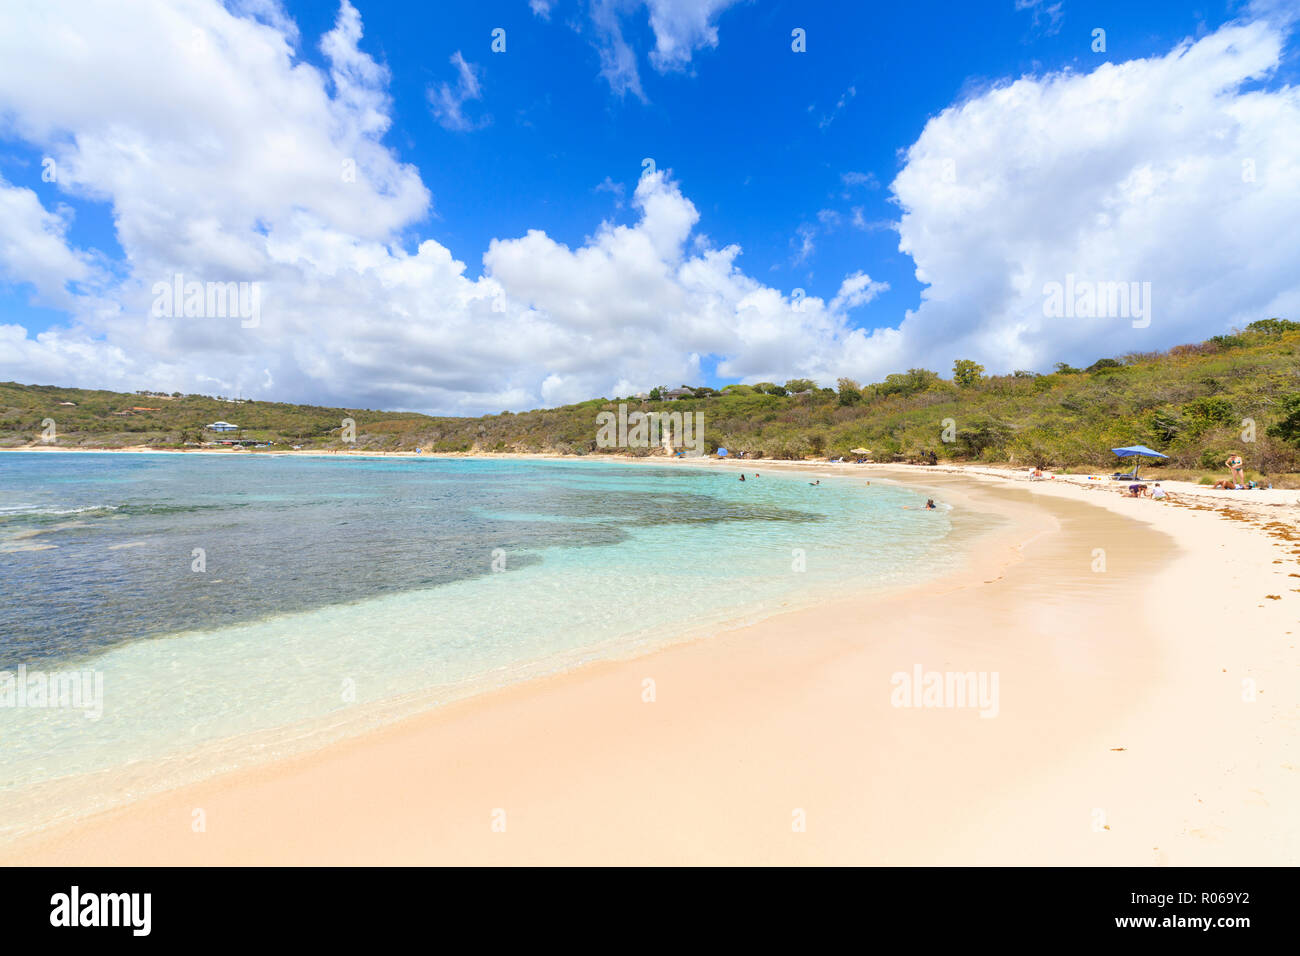 Plage de sable blanc, Half Moon Bay, Antigua-et-Barbuda, les îles sous le vent, Antilles, Caraïbes, Amérique Centrale Banque D'Images